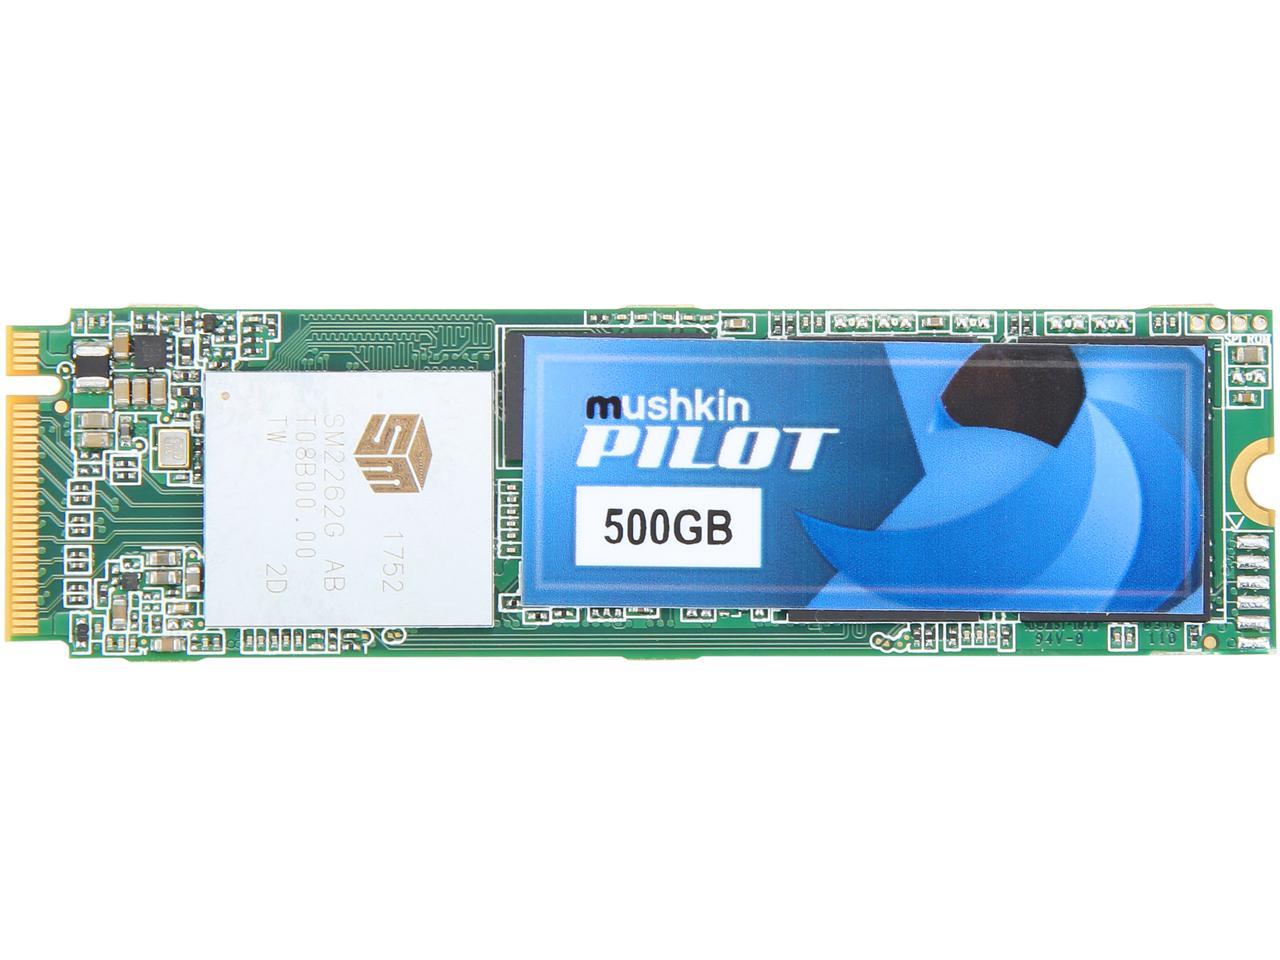 Mushkin Pilot M.2 2280 500GB PCIe Gen3 x4 NVMe 1.3 3D TLC Internal Solid State Drive (SSD) MKNSSDPL500GB-D8